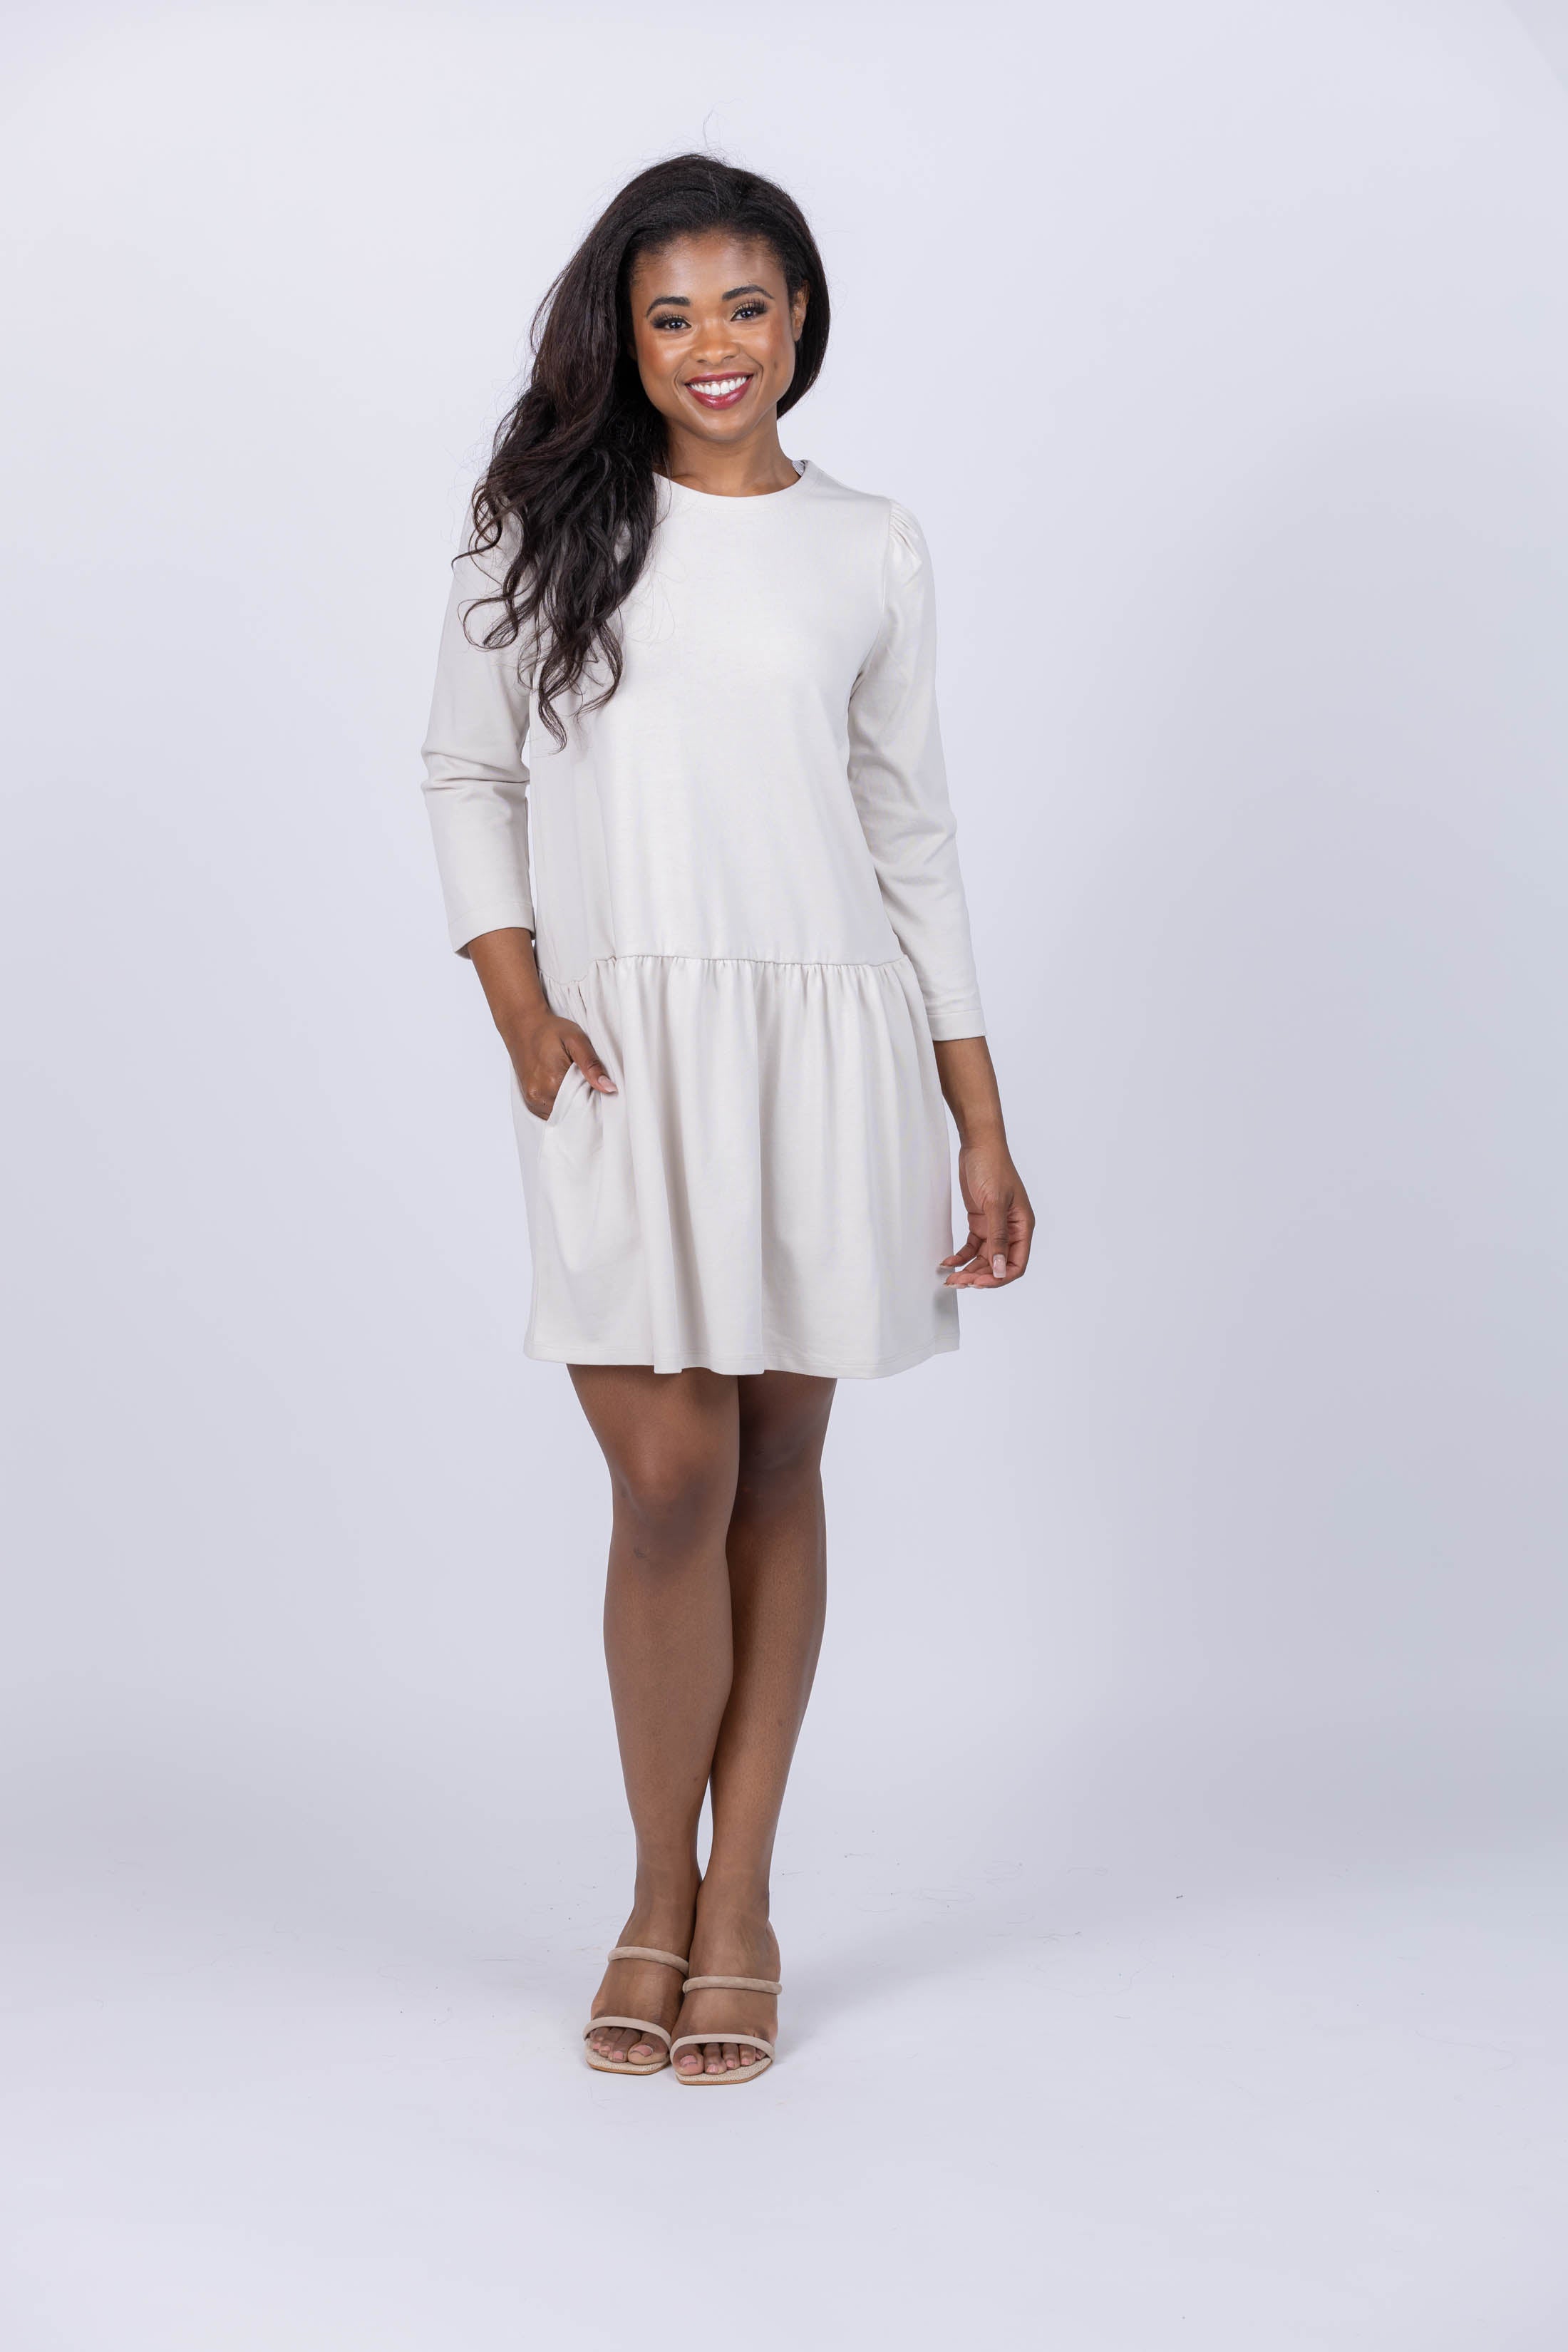 Zara White Peplum Dress | Peplum dress, White peplum dress, White peplum